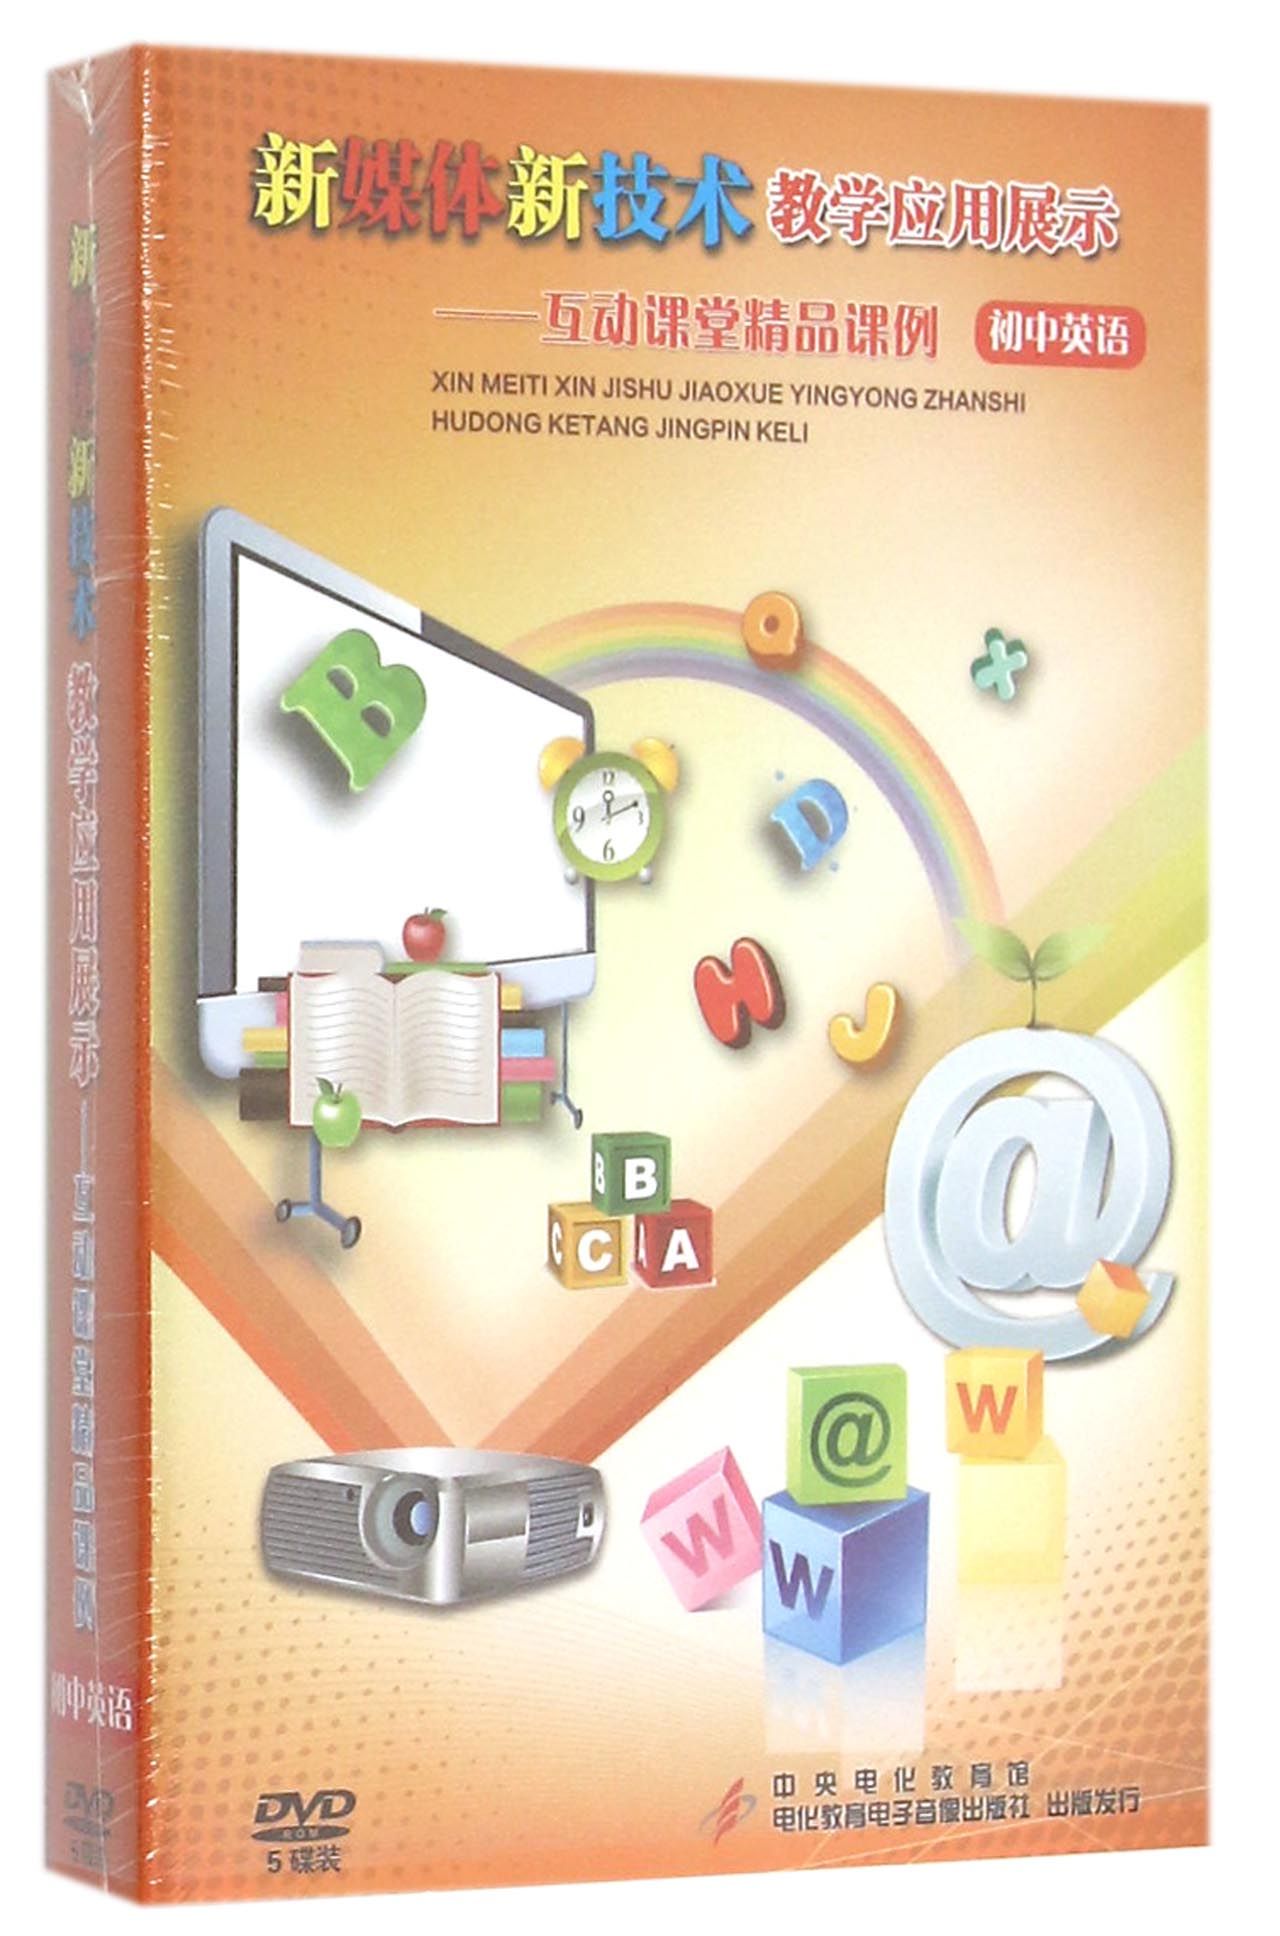 DVD新媒体新技术教学应用展示互动课堂精品